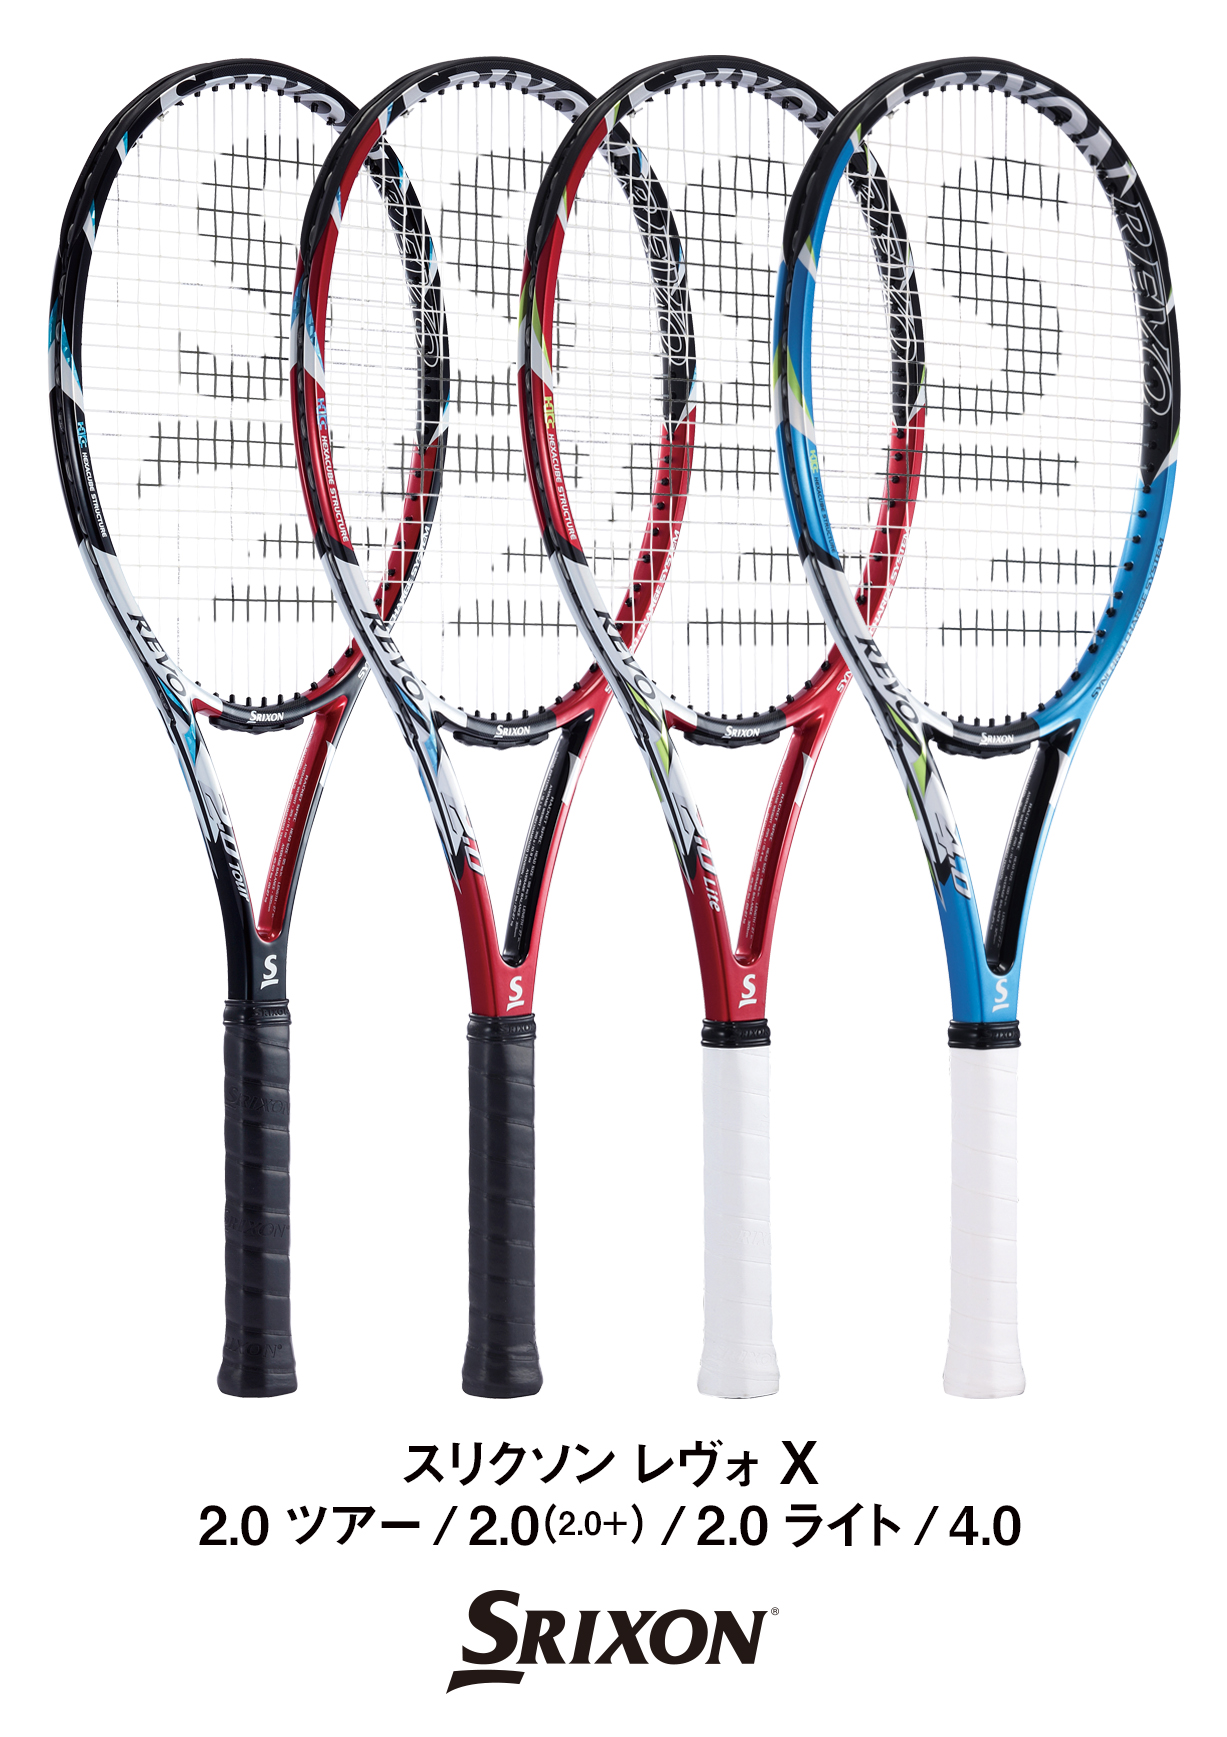 スリクソンテニスラケットNEW「REVO(レヴォ) X(エックス)」シリーズを新発売｜ダンロップスポーツ株式会社のプレスリリース